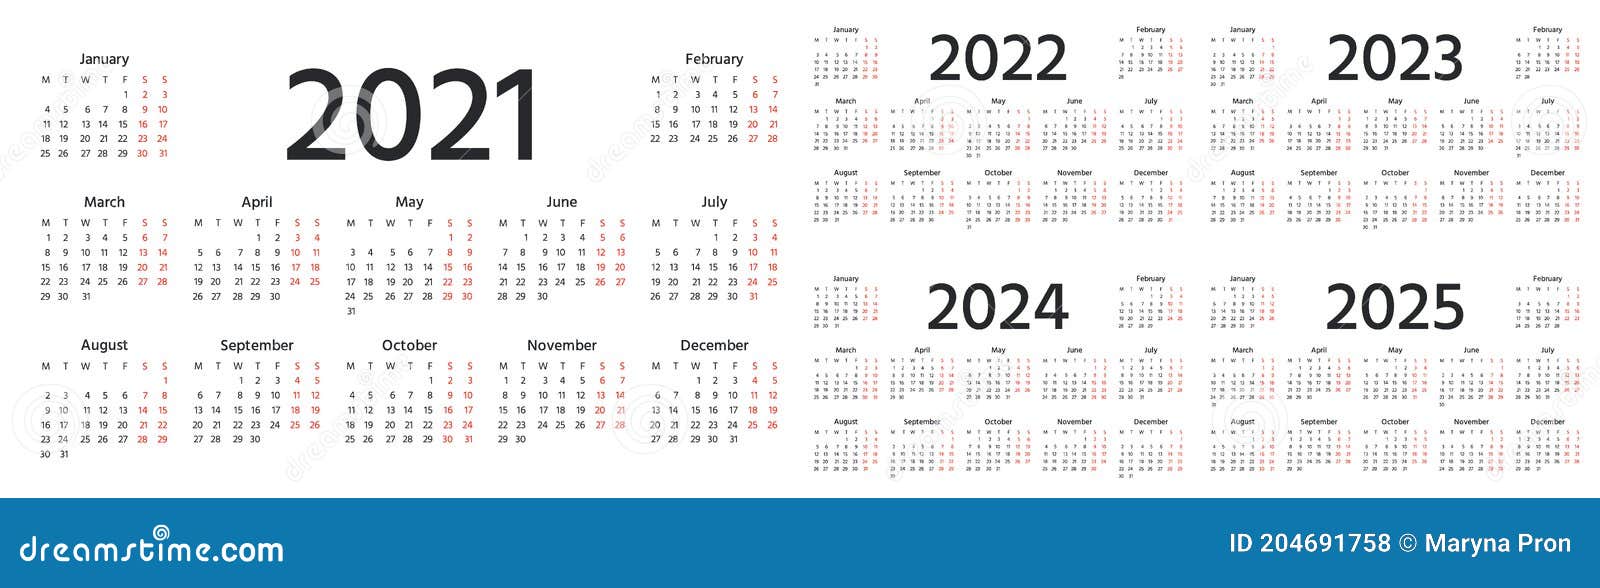 Погода 2025 год. Календарь 2021 2022 2023 2024. Календарь на 2024-2025 год. Календарь 2024 2025 2026. Календарь 2022 2023 2024 2025 русский.